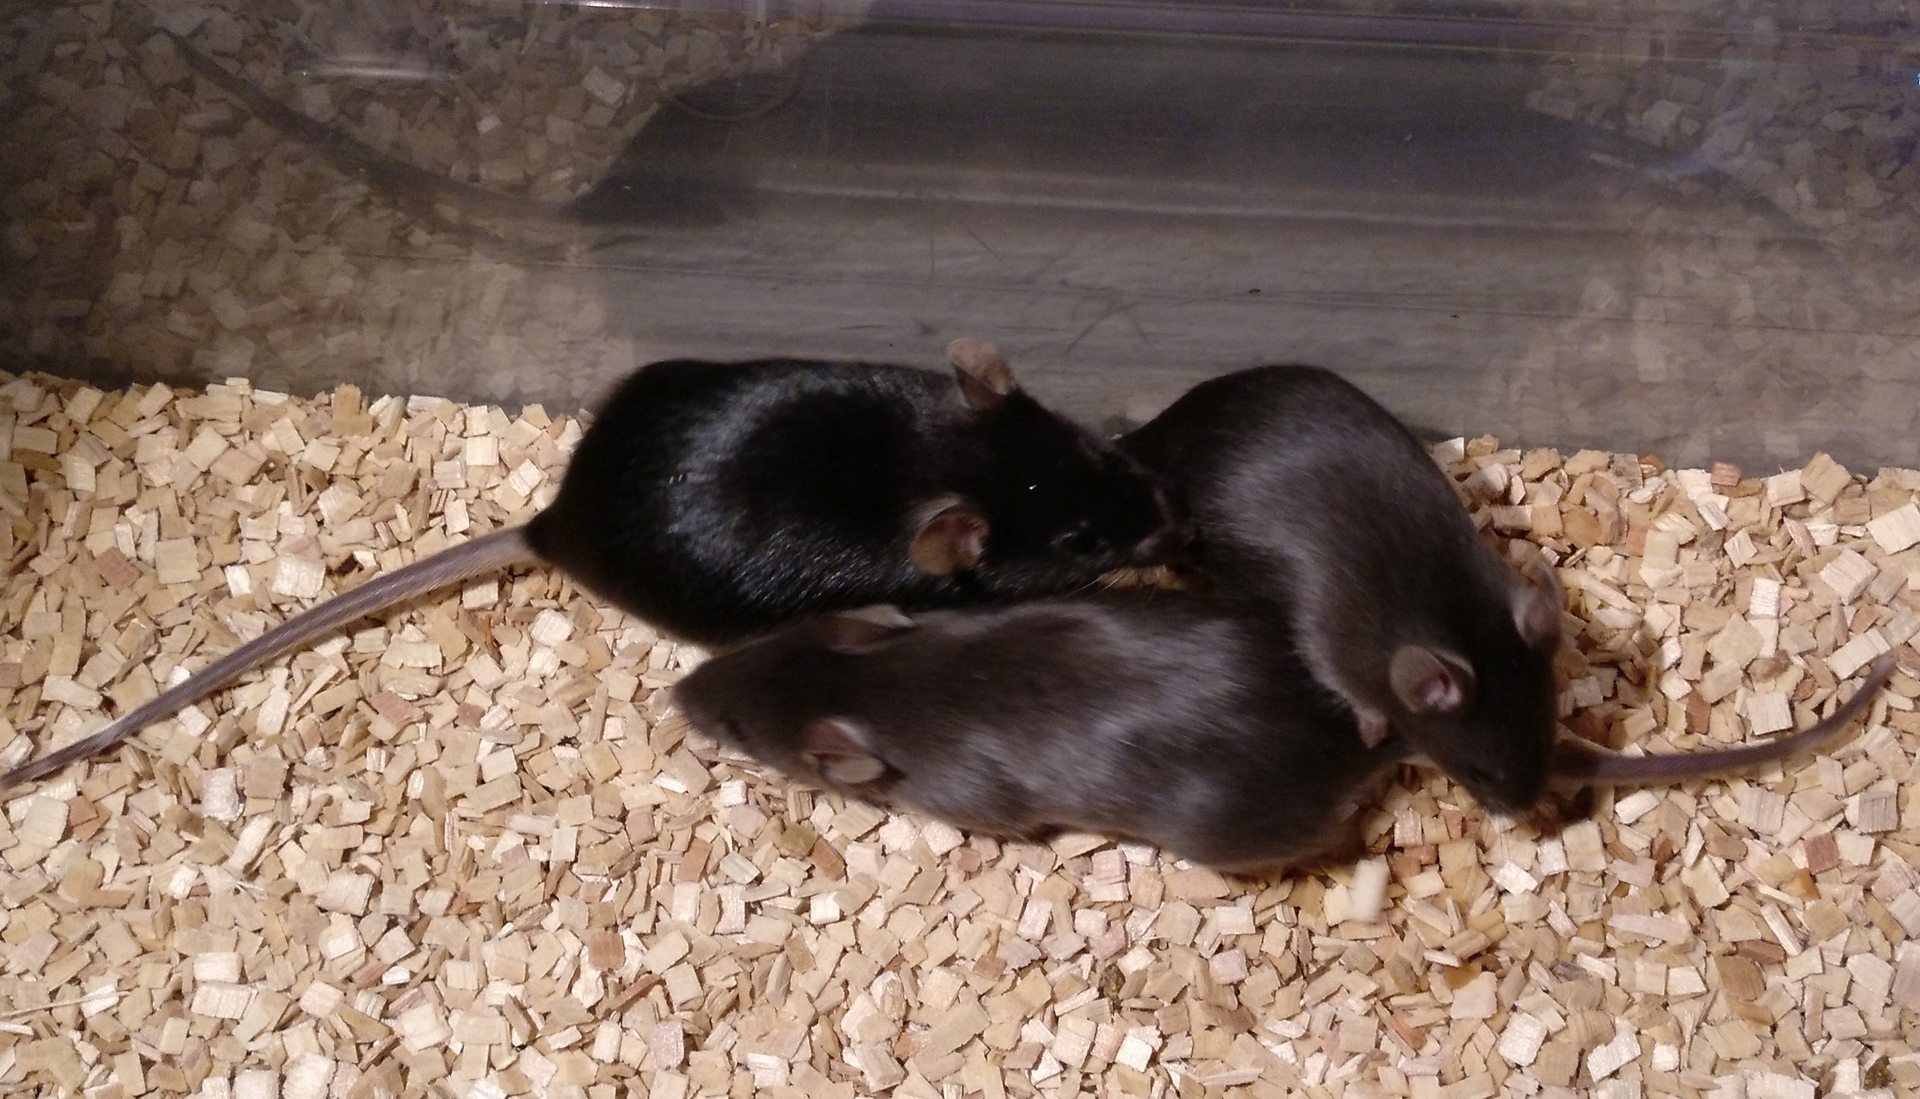 Imagen de tres ratones, dos de ellos más claros y otro más oscuro, sobre un suelo de serrín.